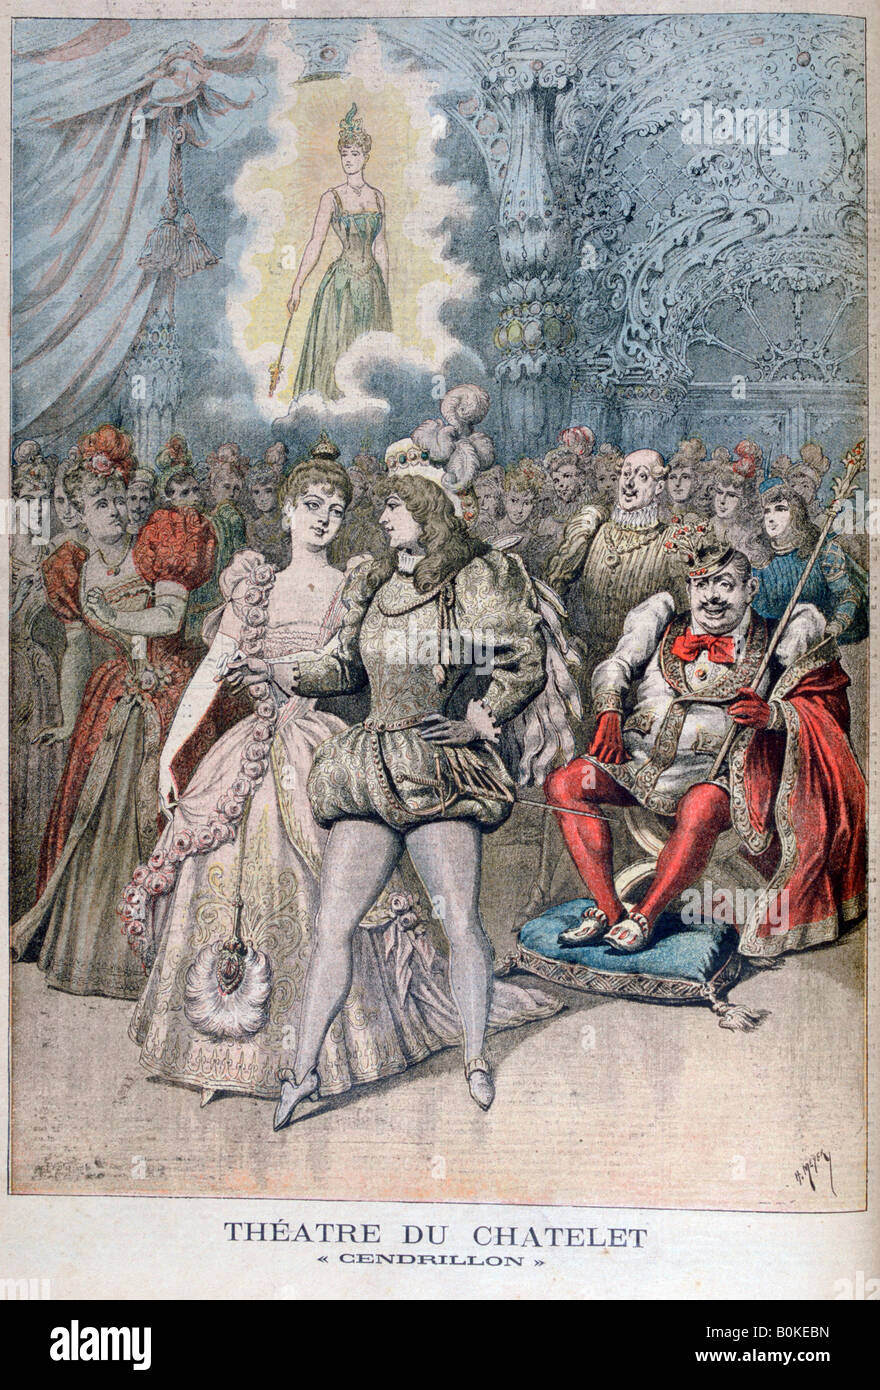 Cendrillon (Cinderella), Théâtre du Châtelet, Paris, 1895. Artist: Henri Meyer Stock Photo